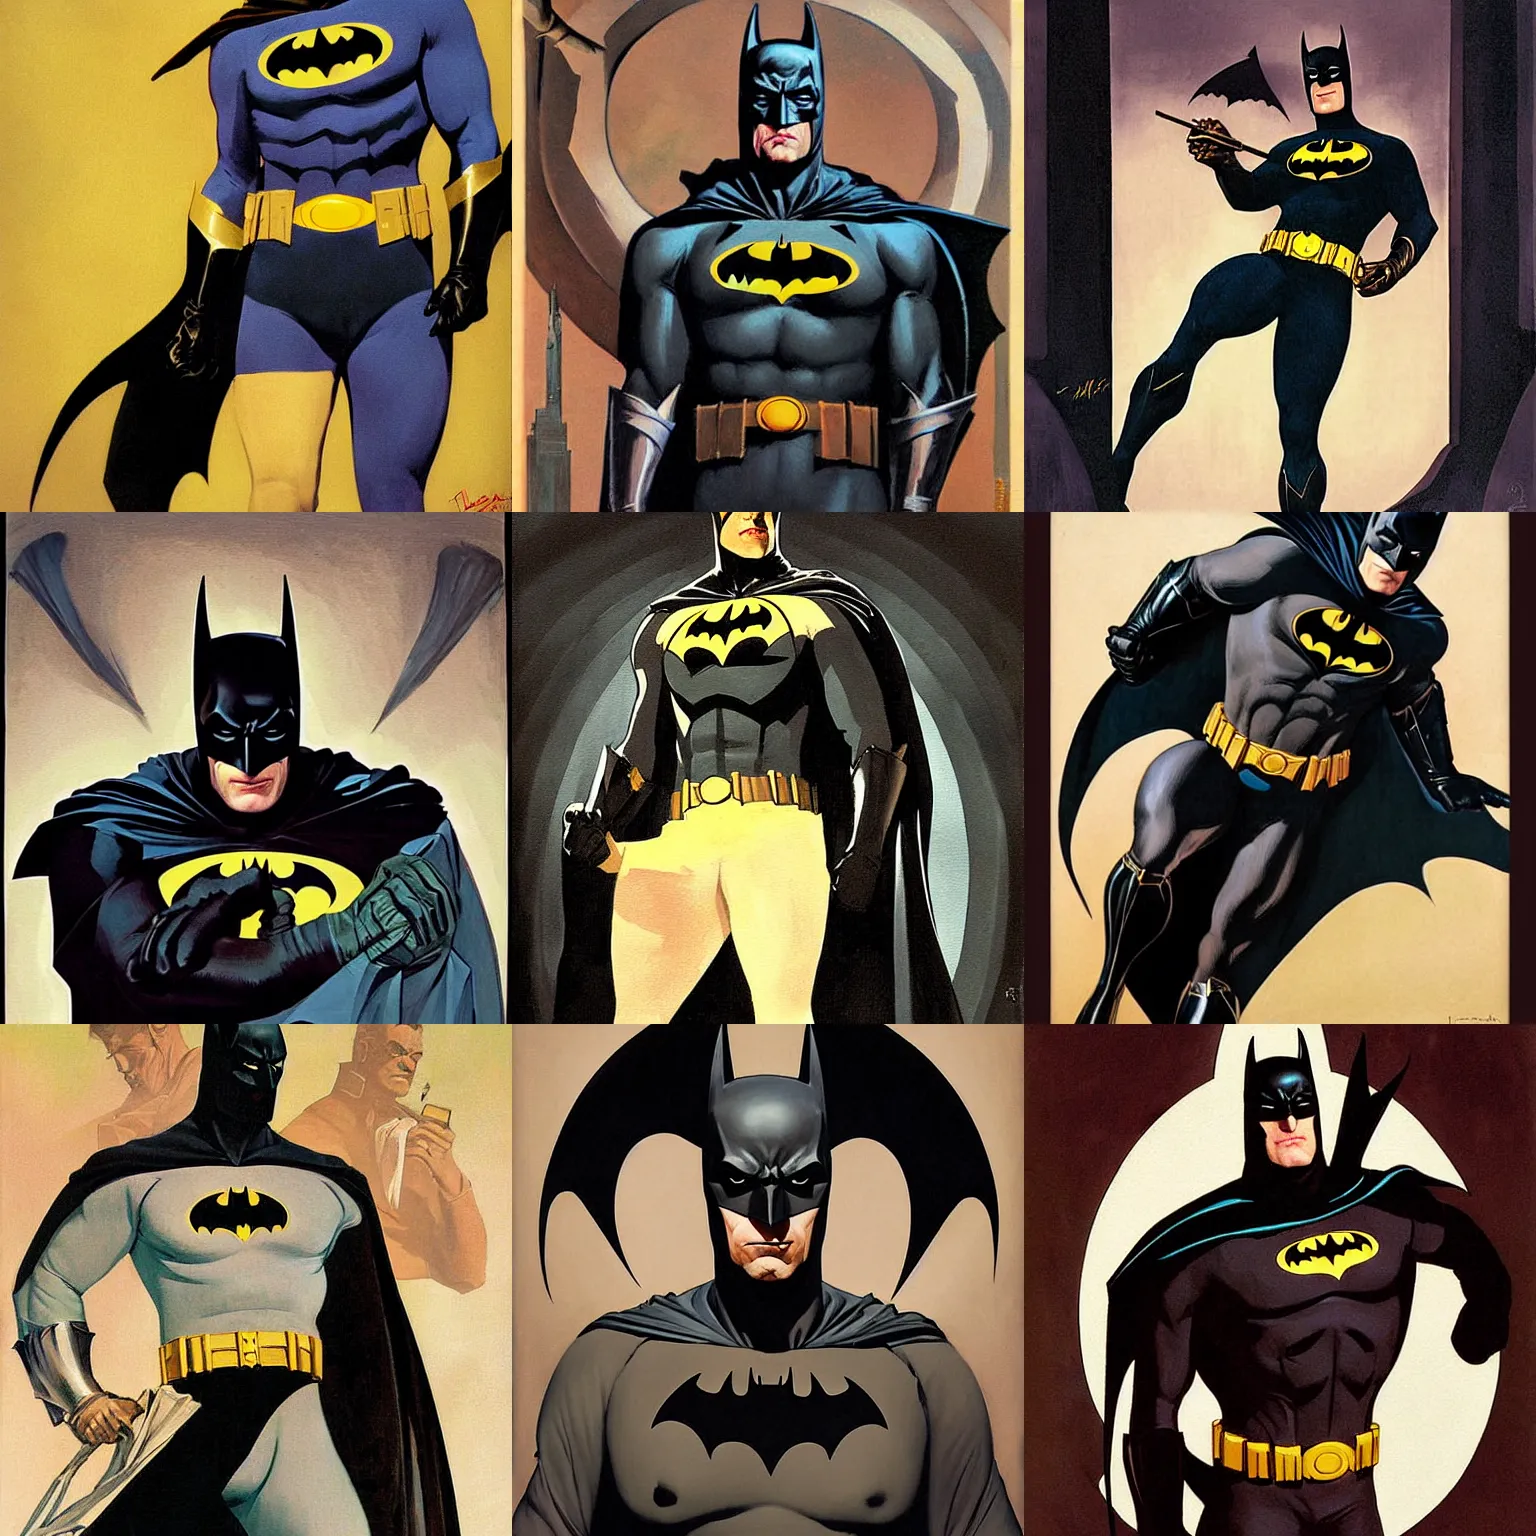 Prompt: batman painting by leyendecker